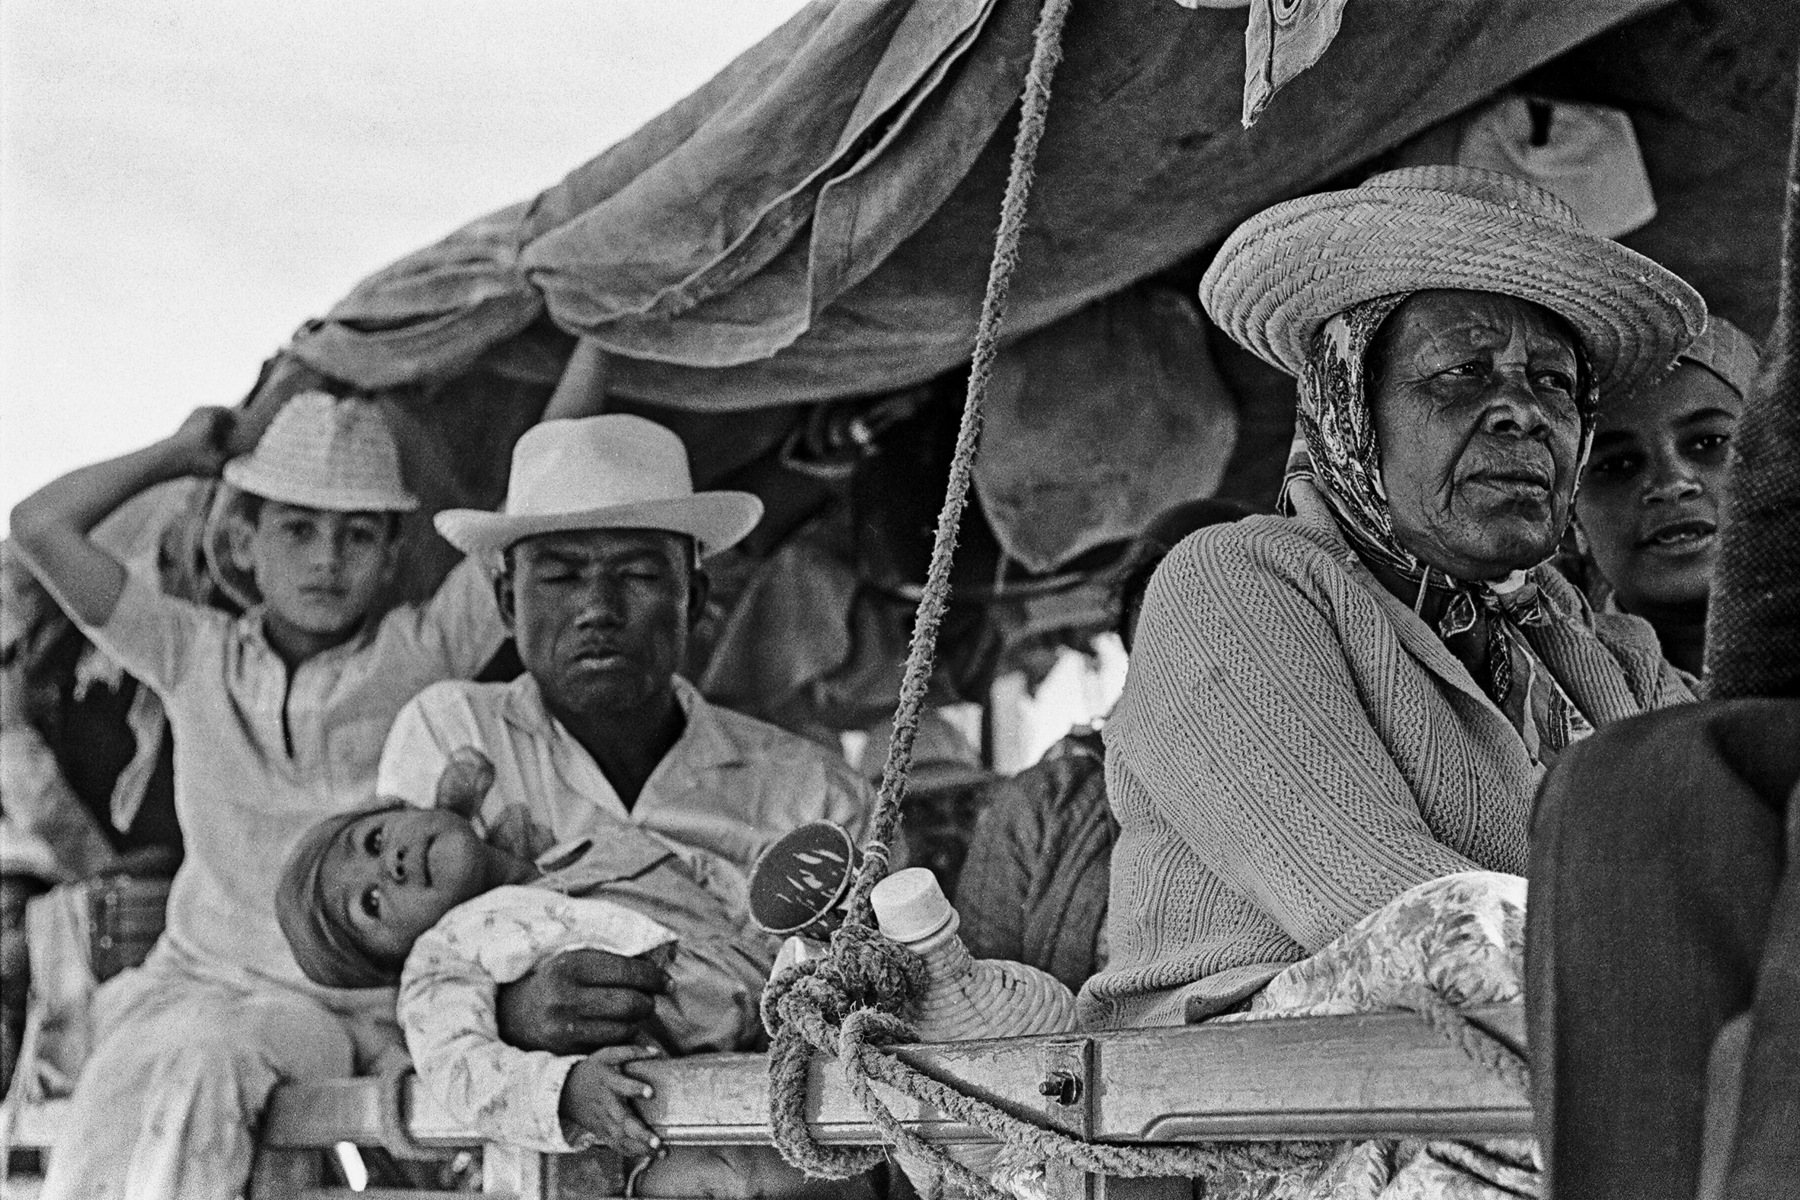 Fotografia em preto e branco. Um grupo de pessoas, entre homens, mulheres e crianças, sobre uma carroceira coberta com lonas de tecido. Vestem camisas e chapéus com abas.